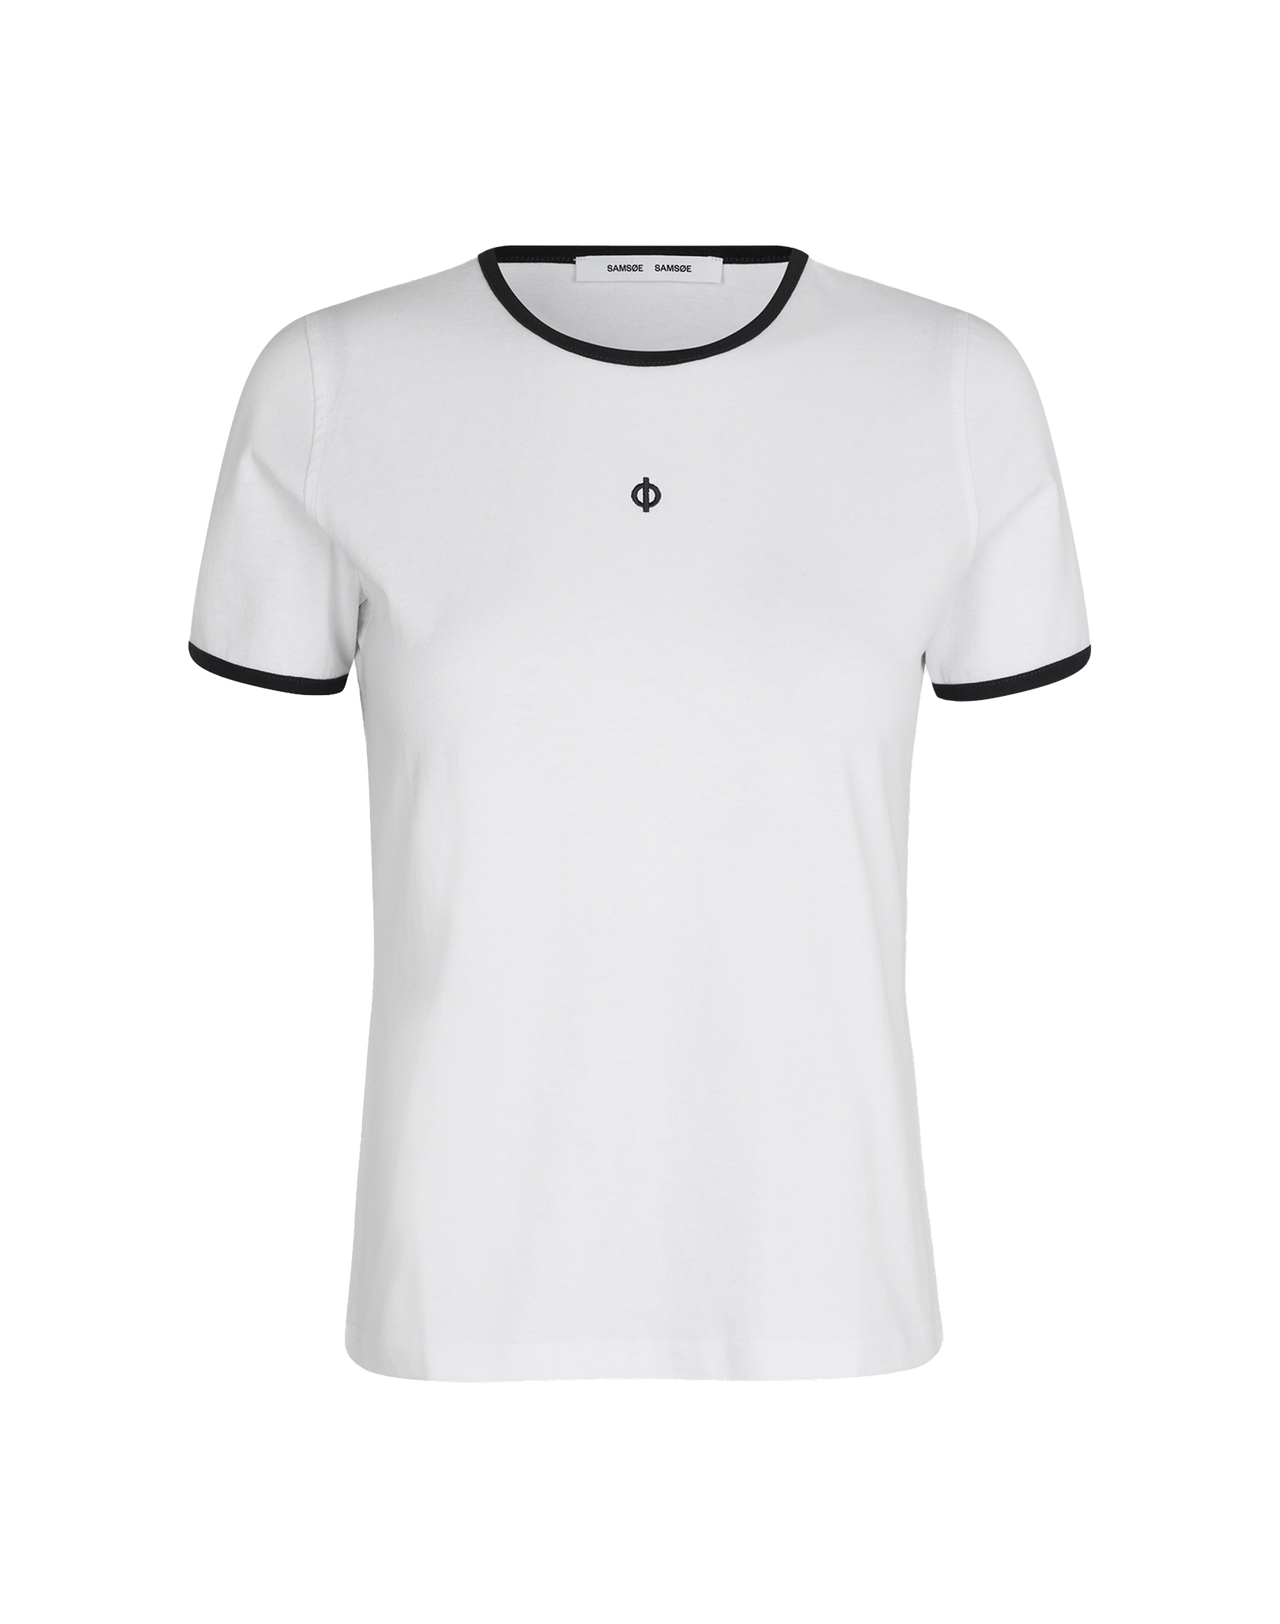 SAMSOE SAMSOE Salia T-Shirt in Weiß, Frontal